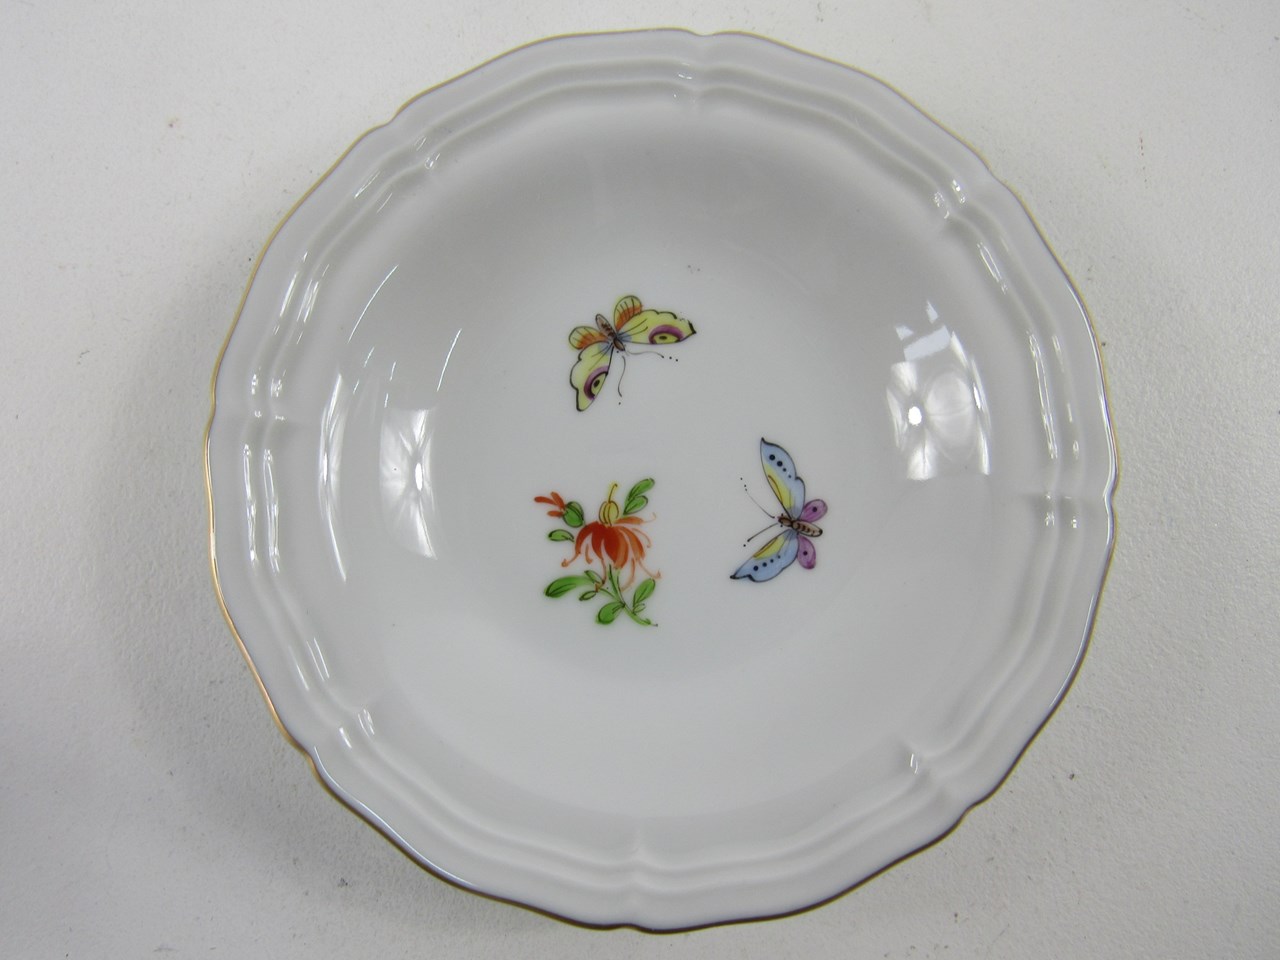 Bild von Höchst Porzellan Konfektteller mit Schmetterling & Blumen Dekor